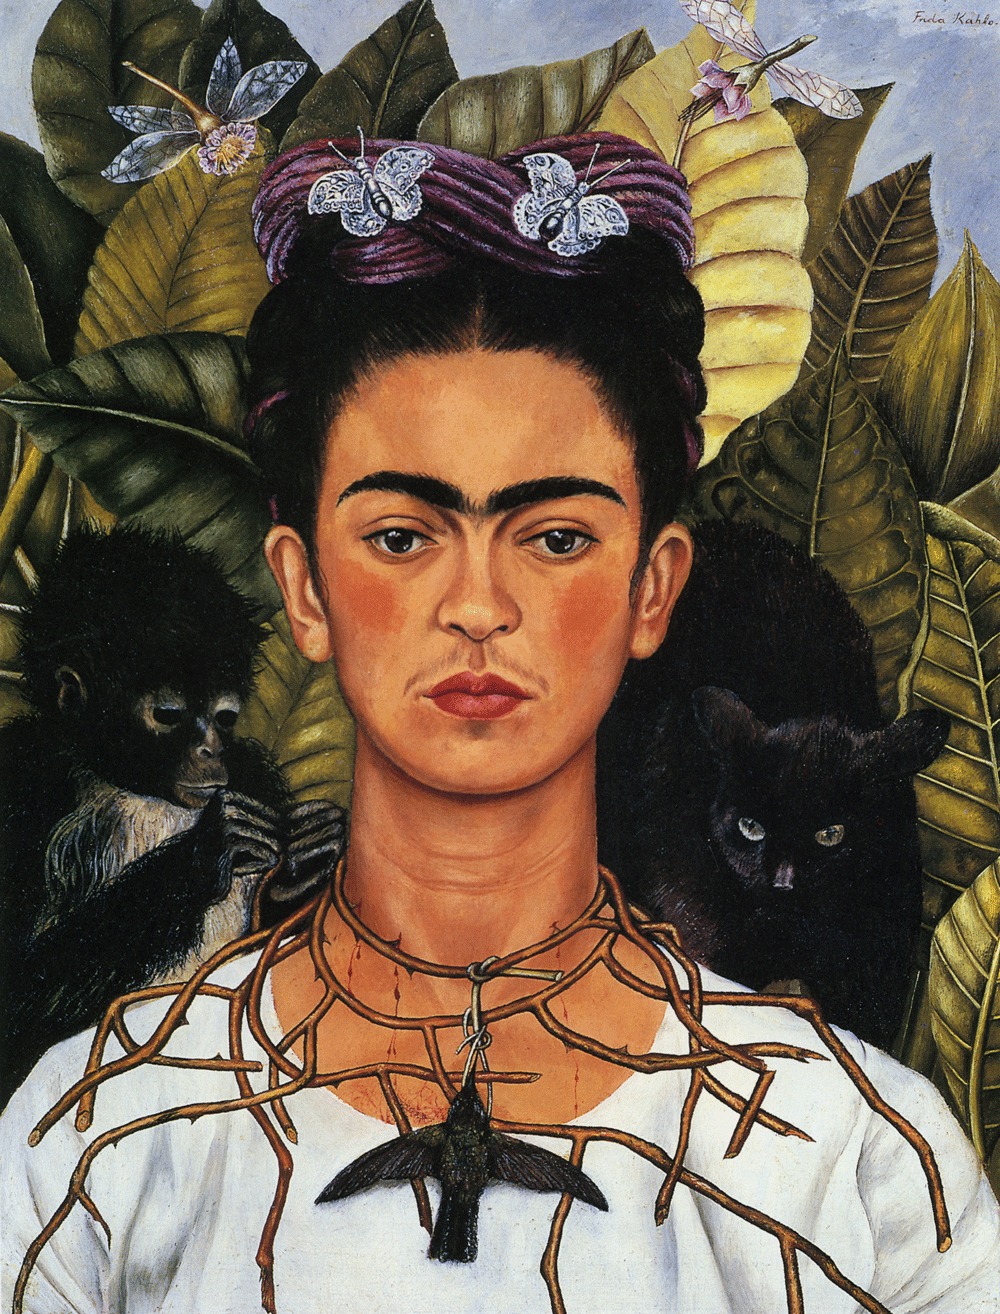 Frida Kahlo - July 6, 1907 - July 13, 1954